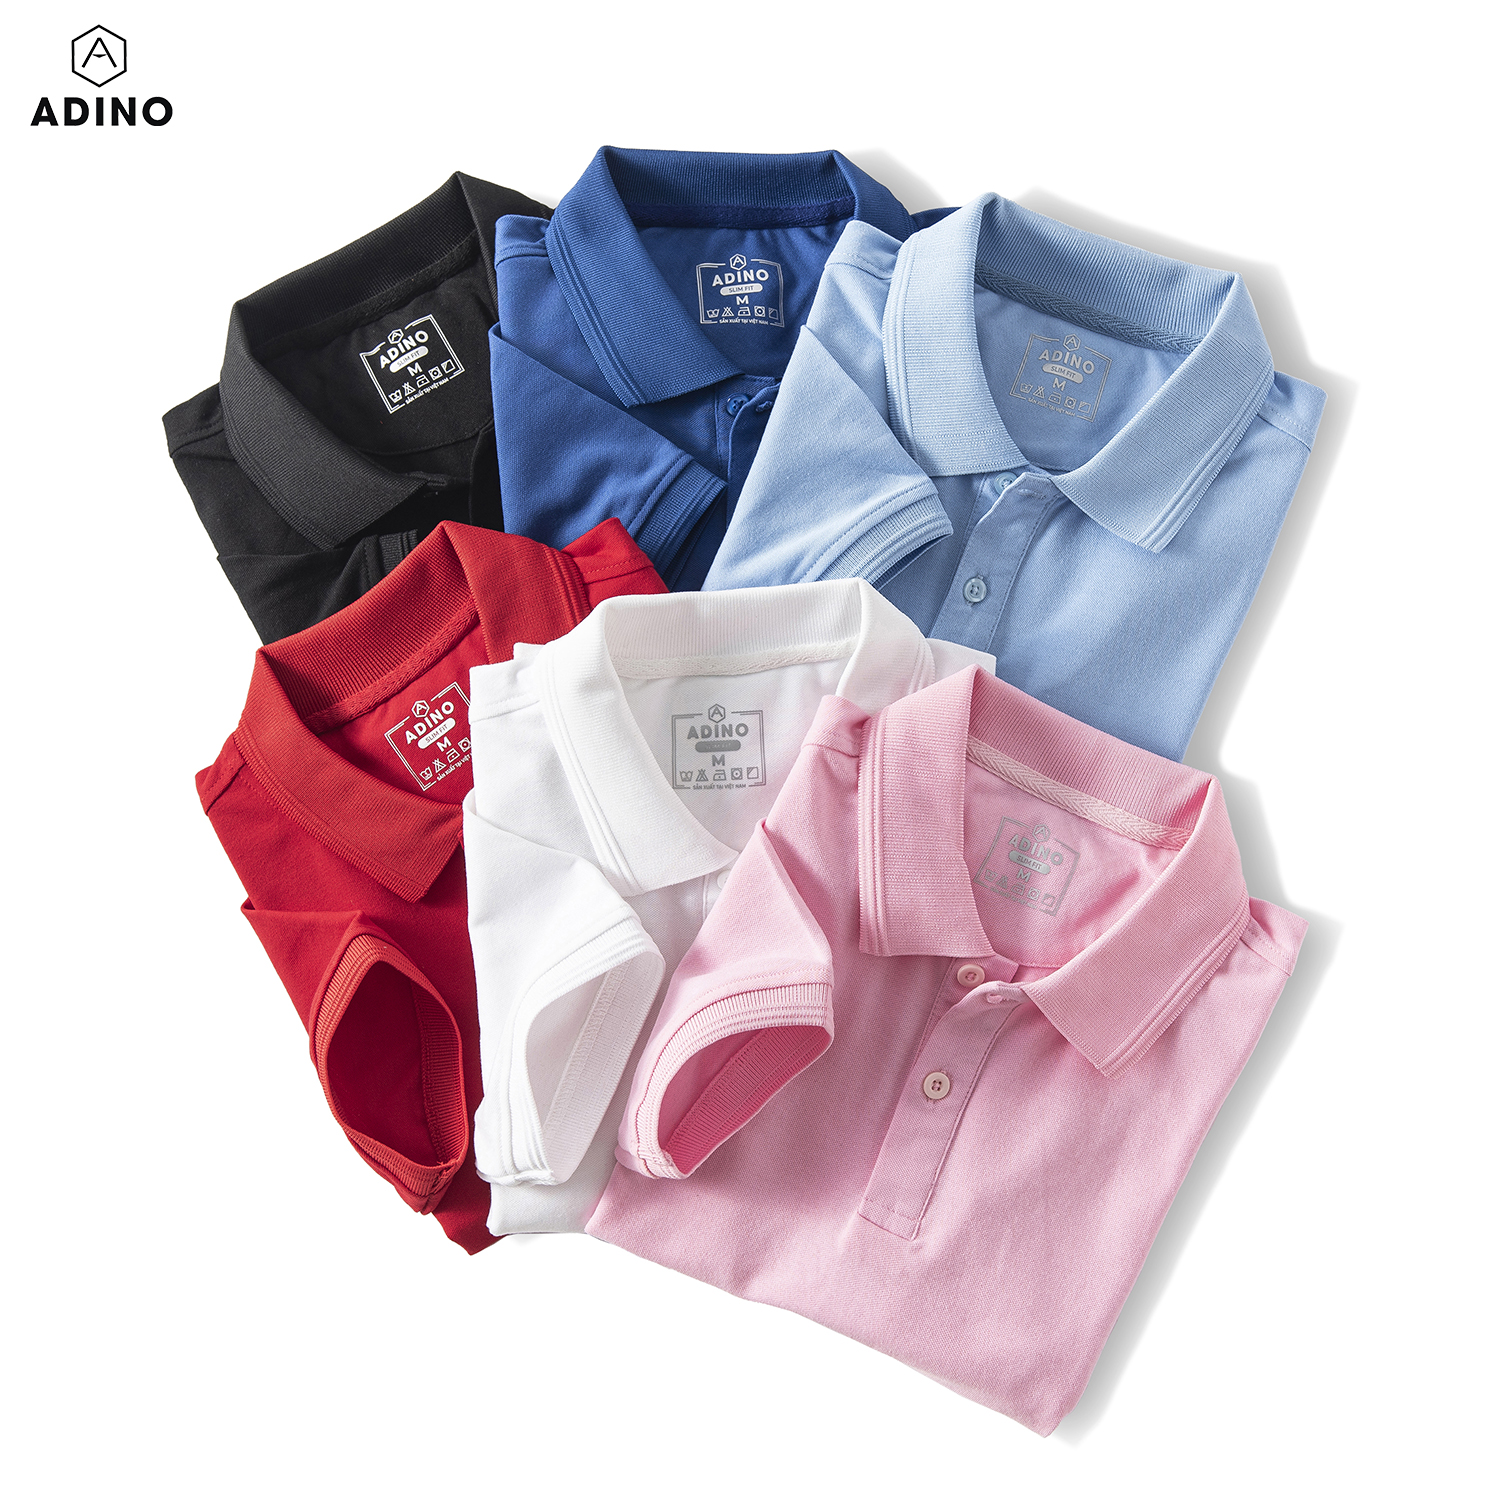 Áo polo nam màu xanh bích đậm phối viền chìm ADINO vải cotton polyester mềm dáng slimfit công sở trẻ trung năng động AP83